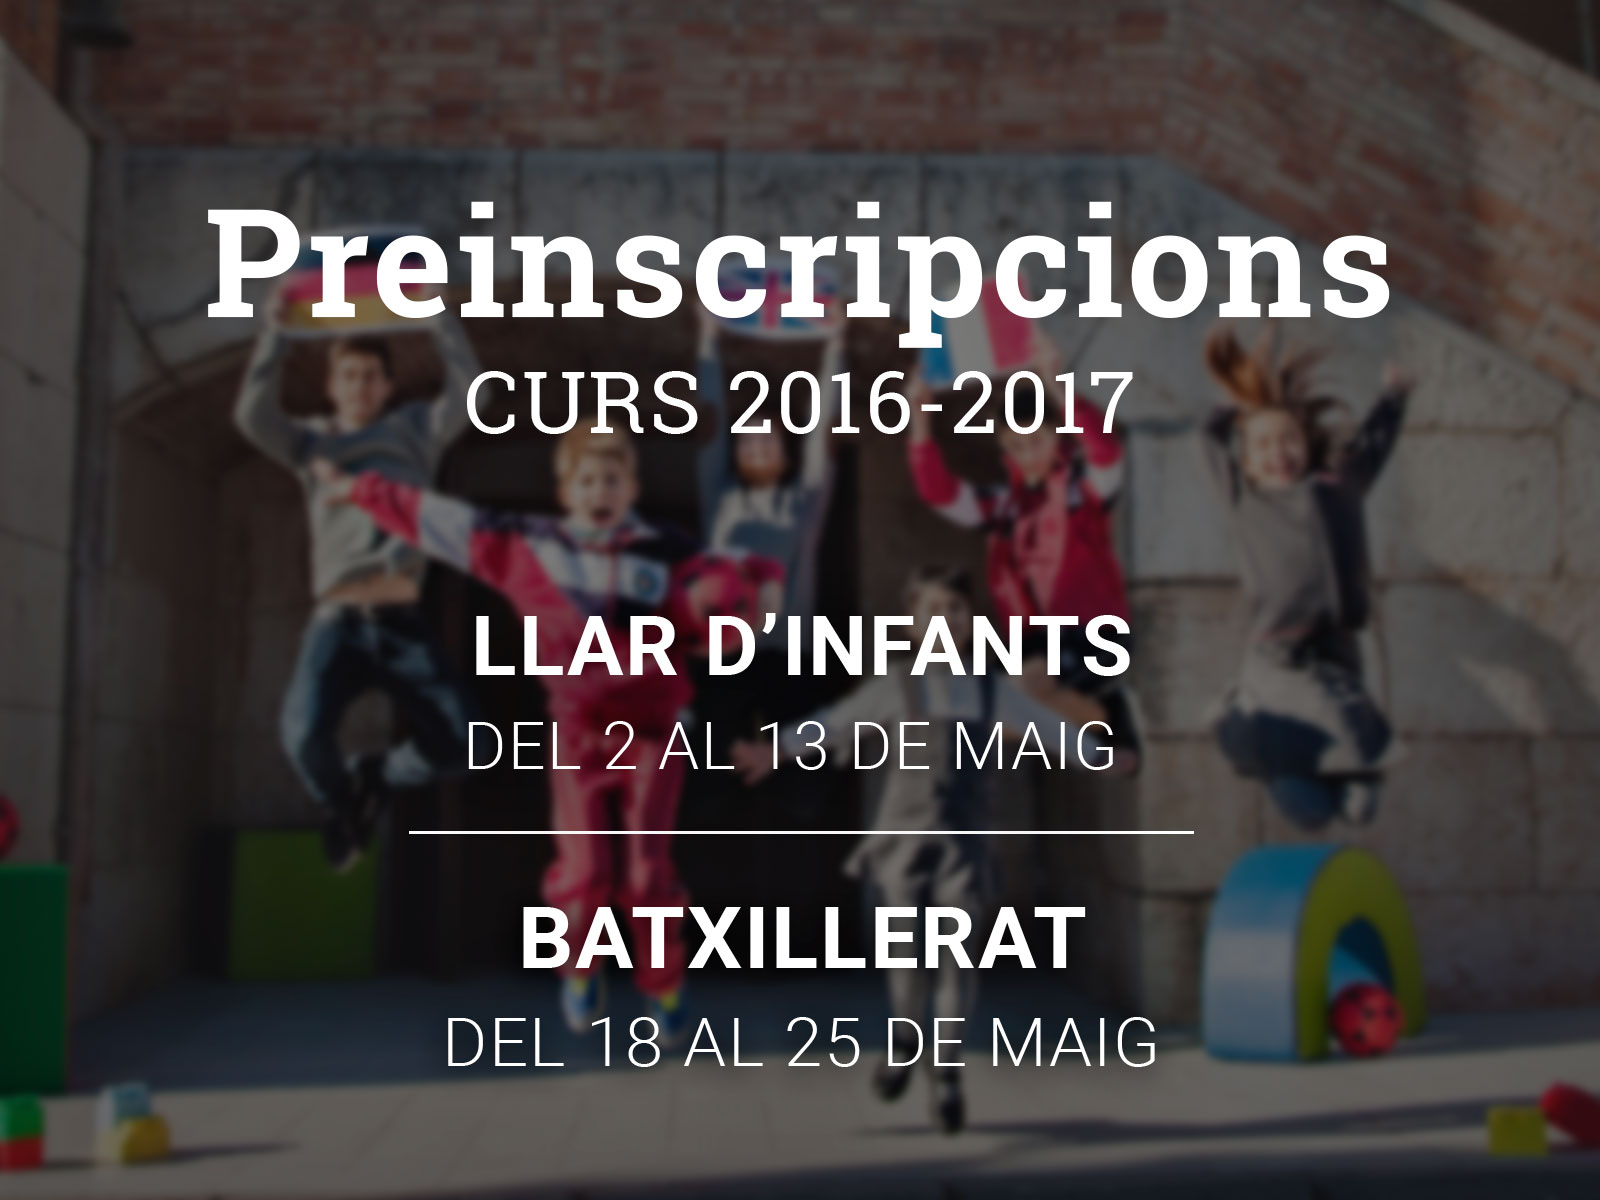 Preinscripcions curs 2016-2017